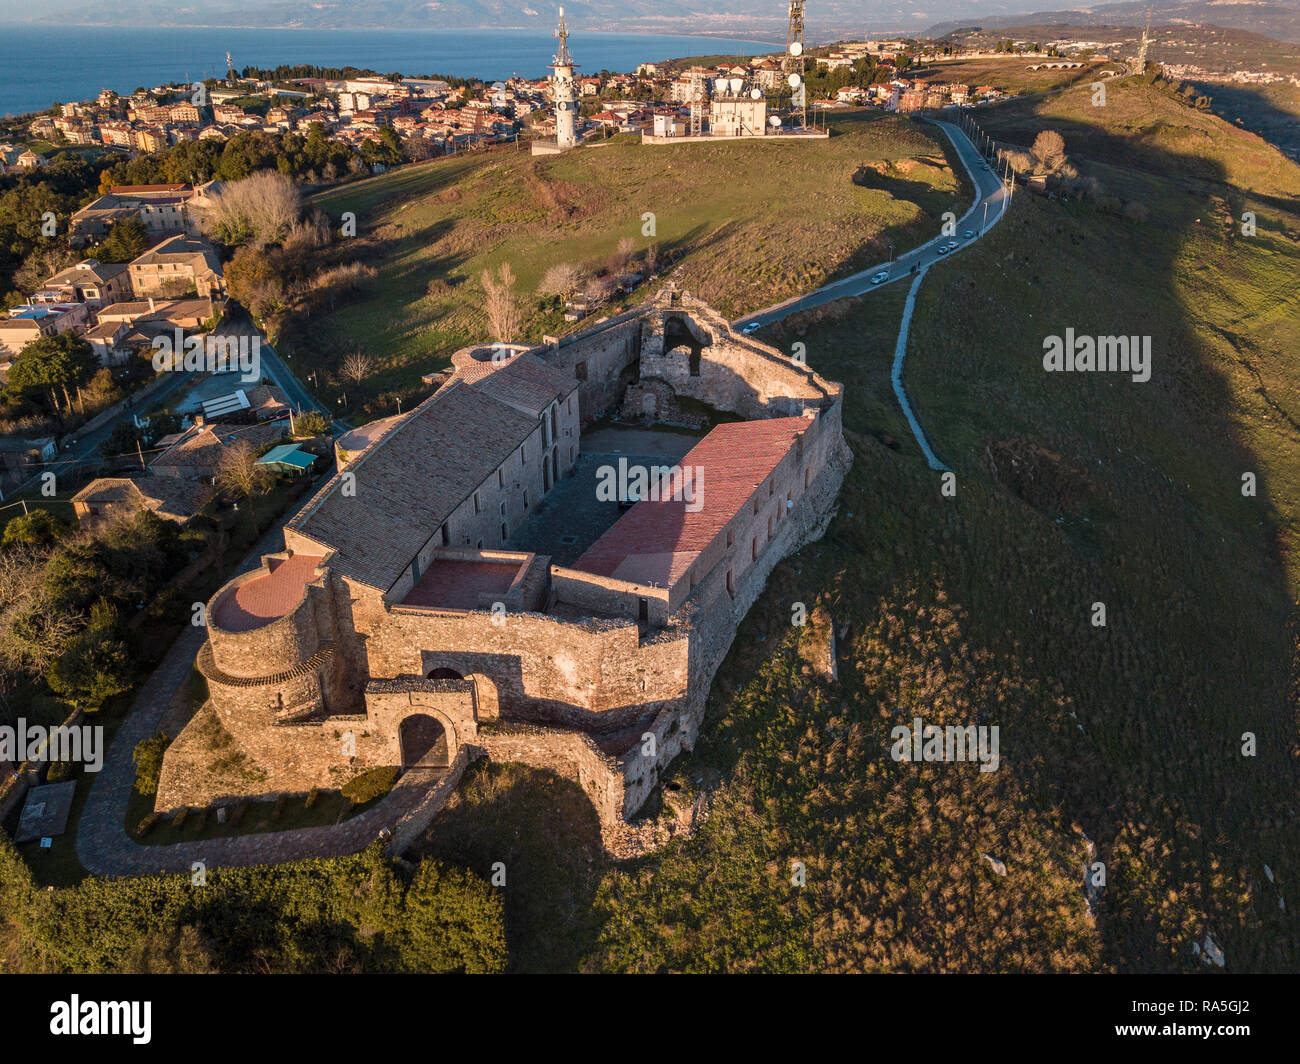 Vue aérienne du Château Souabe Norman, Vibo Valentia, Calabre, Italie. Aperçu de la ville vu du ciel, les maisons et les toits Banque D'Images